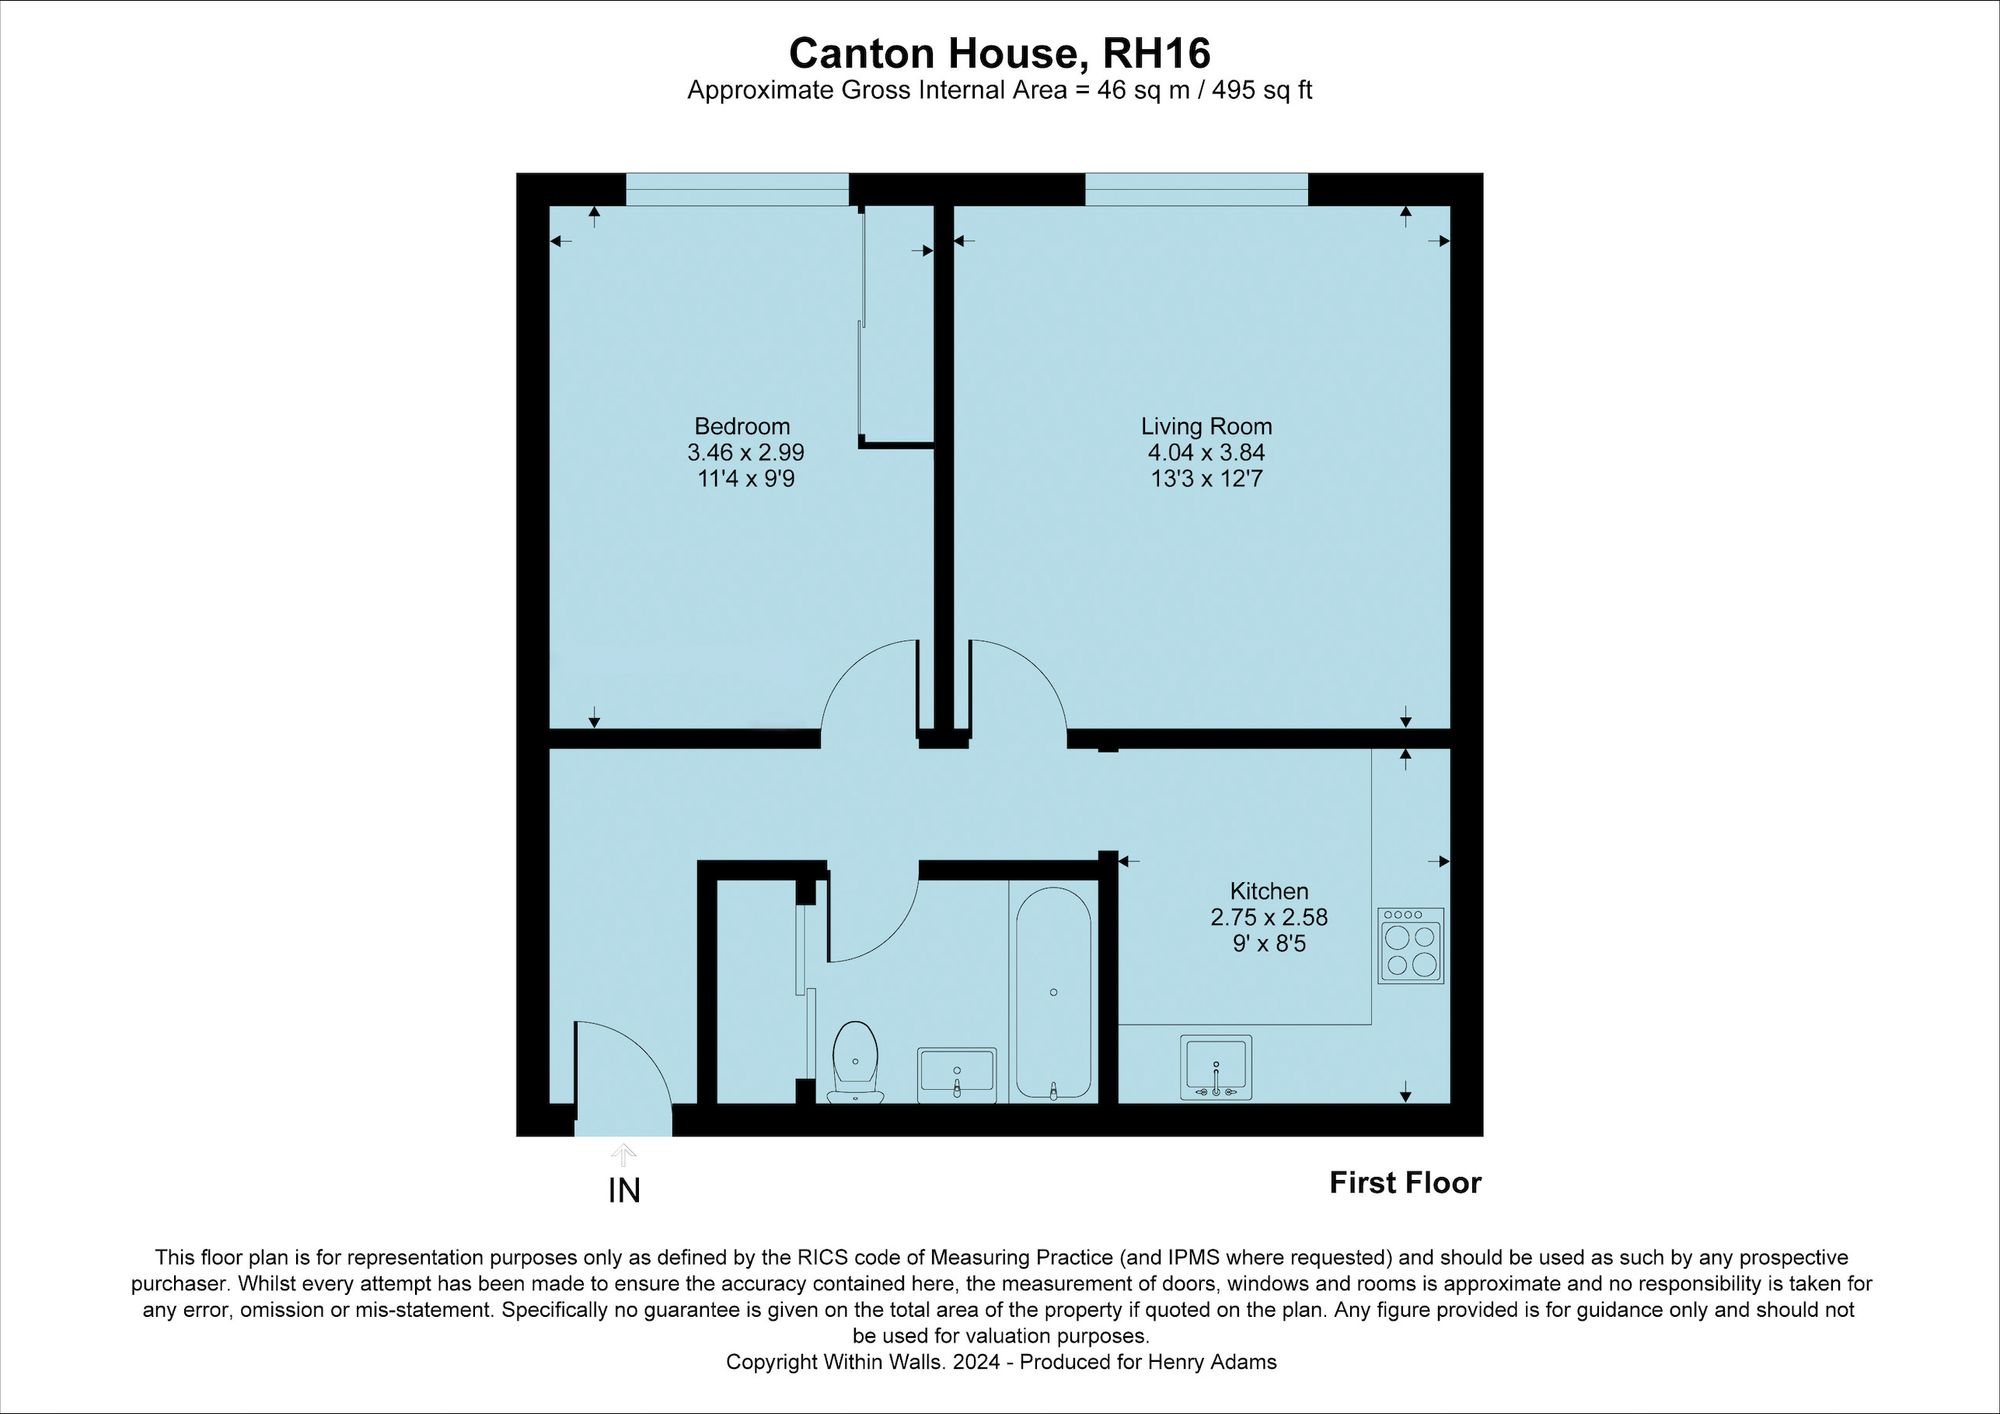 Canton House, Great Heathmead, RH16 floorplans